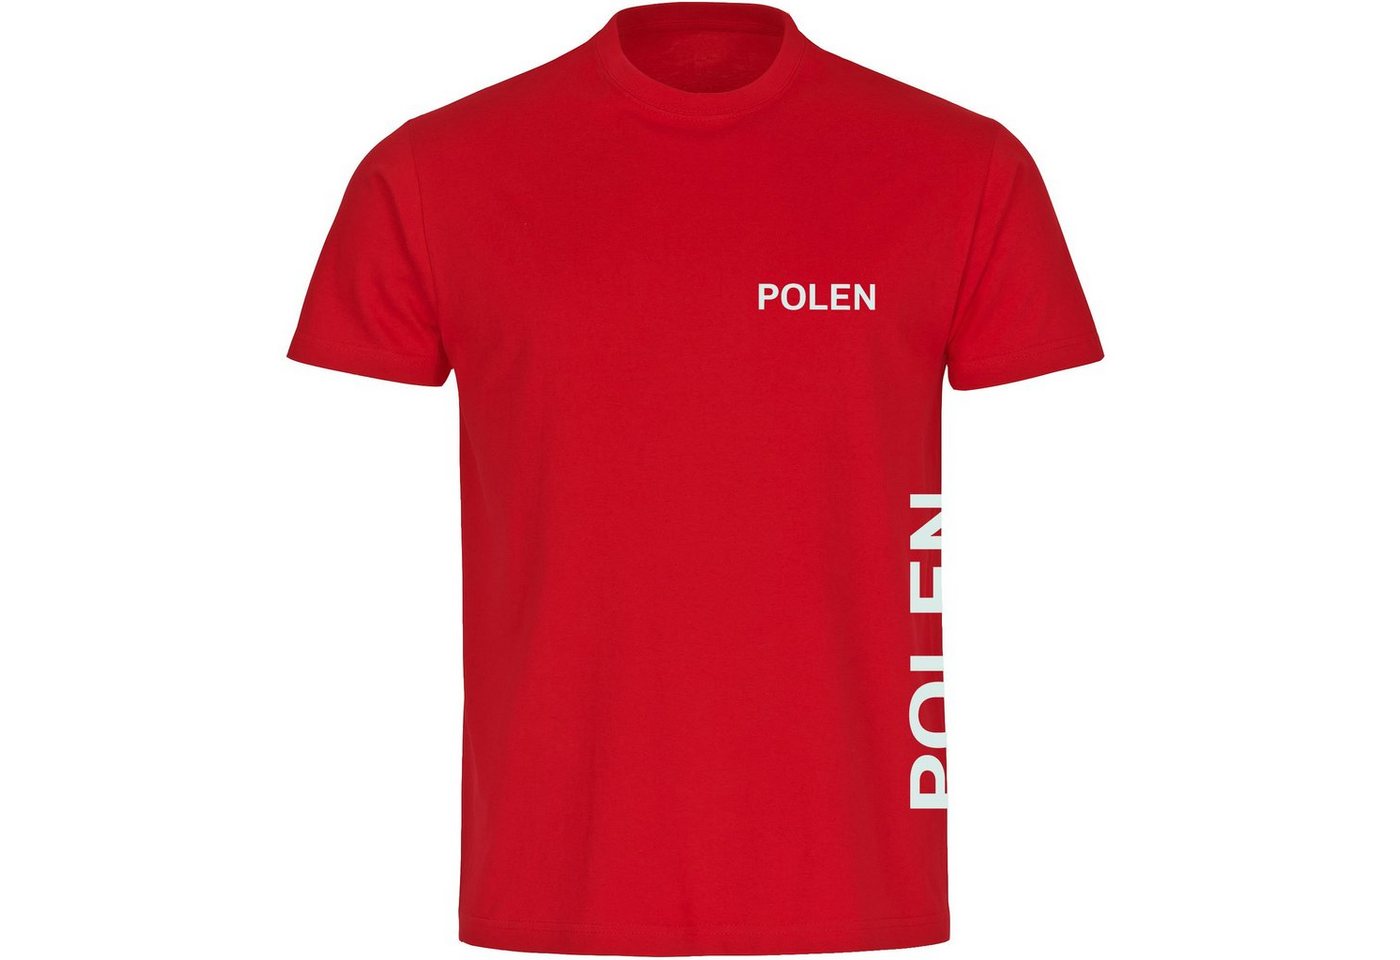 multifanshop T-Shirt Herren Polen - Brust & Seite - Männer von multifanshop